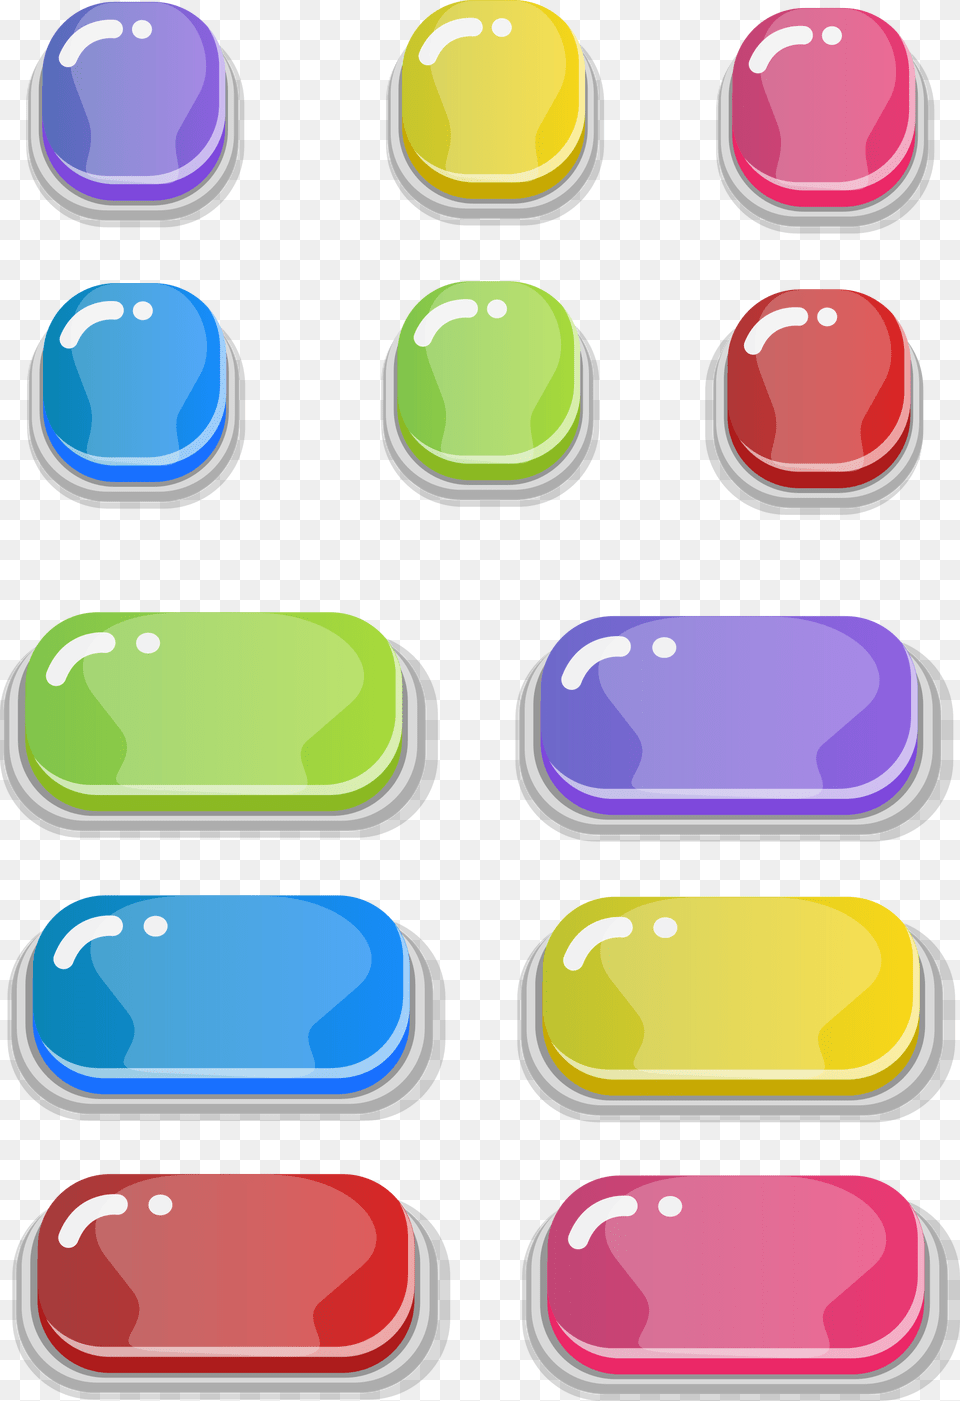 Set 1 Ui Button Cartoon, Computer Hardware, Electronics, Hardware, Mouse Free Transparent Png